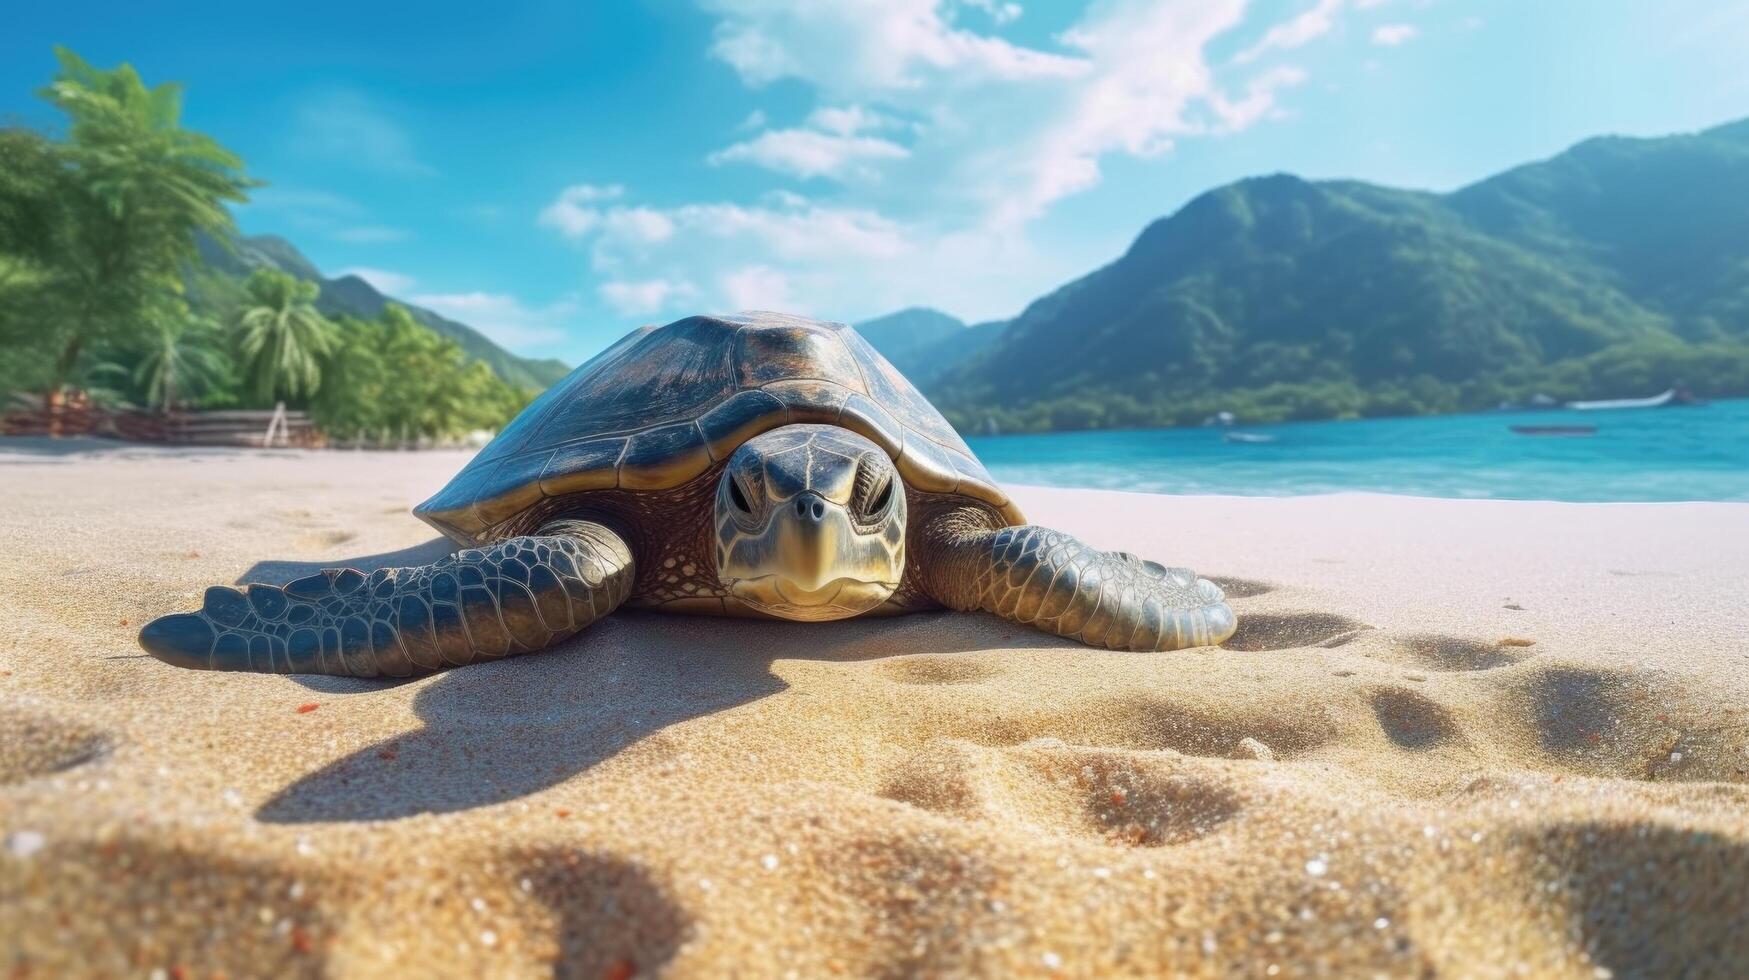 mar tartaruga rastejando em a arenoso de praia. verão, azul céu.. ilustração ai generativo foto